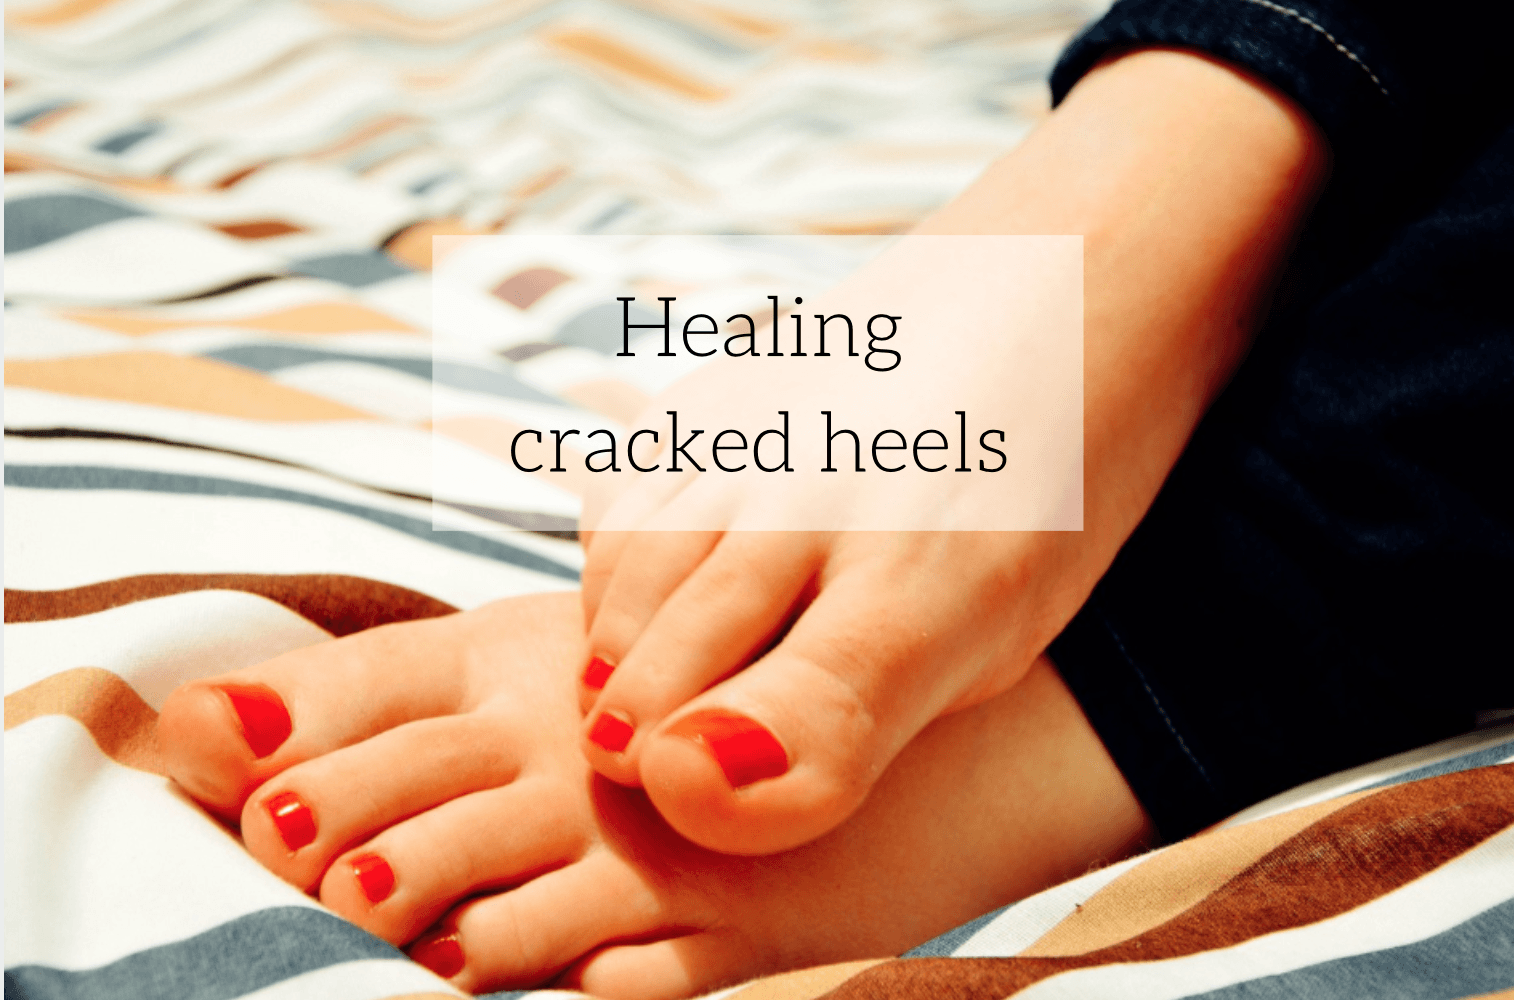 ayurvedic medicine for cracked heels